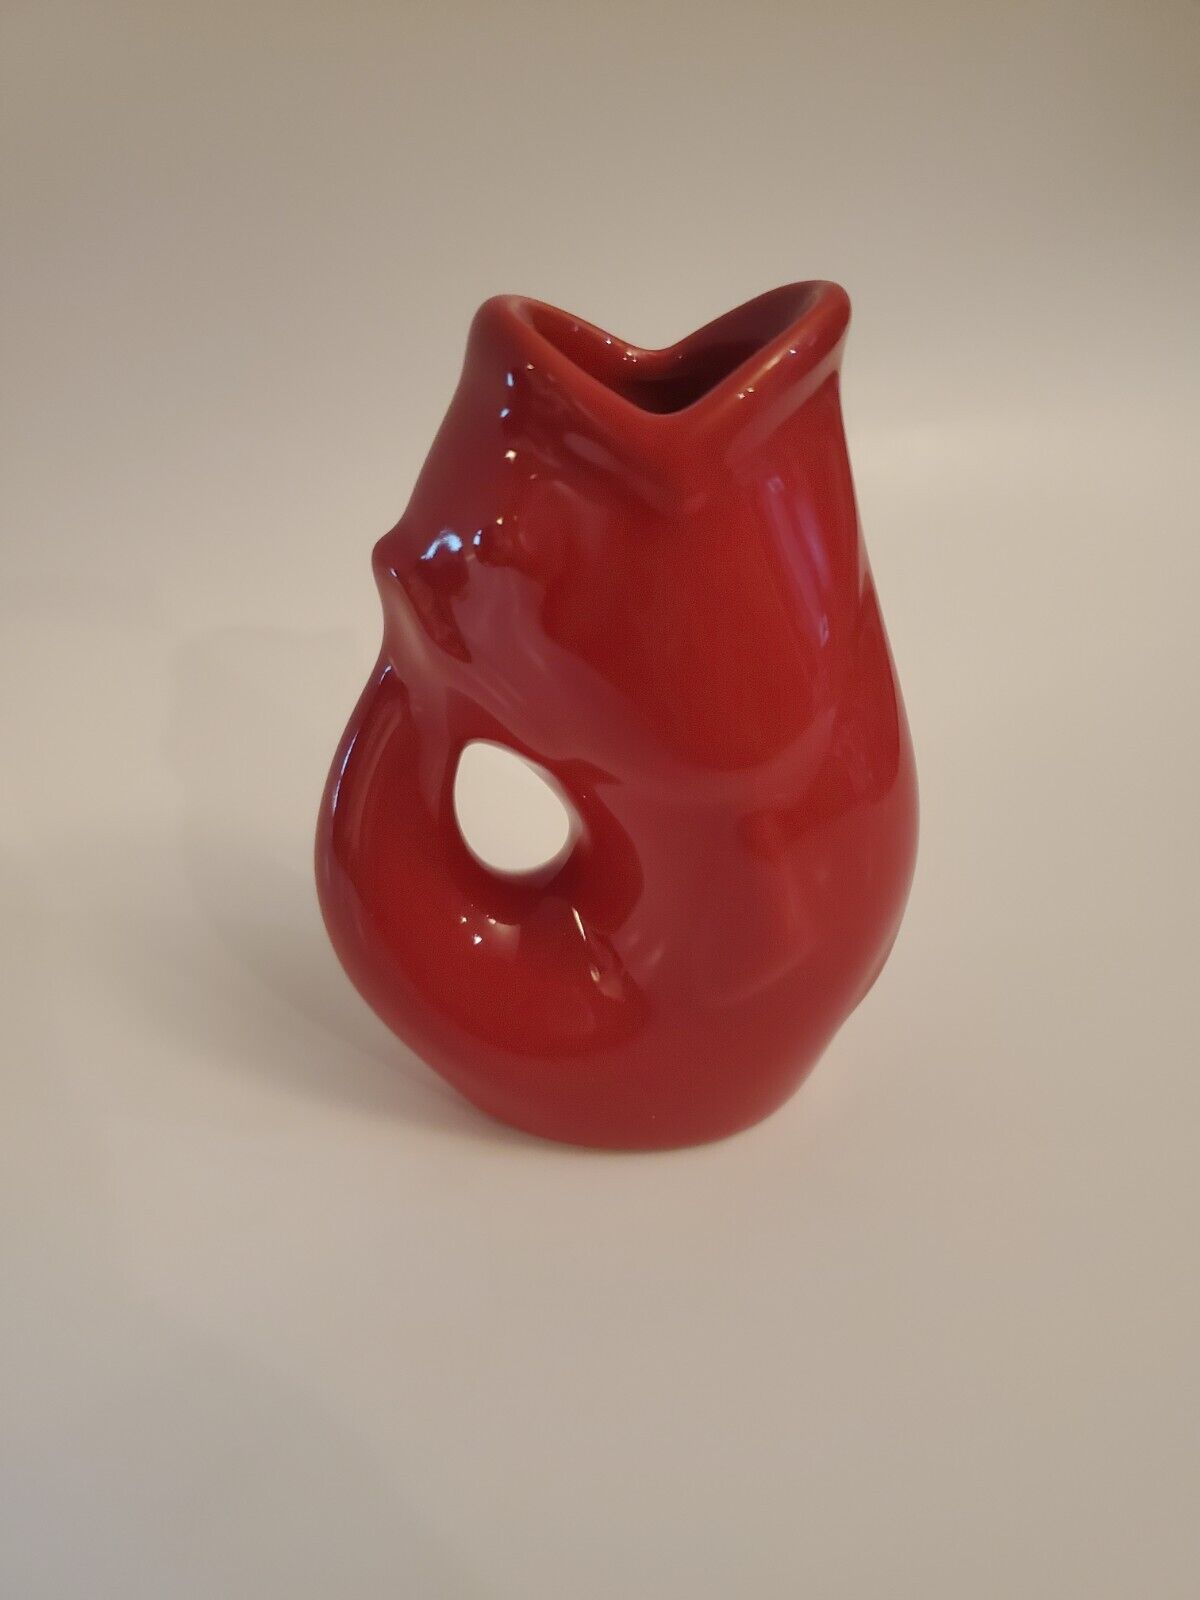 2006 Red Original Gurgle Pot Fish Pitcher/Vase Ceramic 4" 